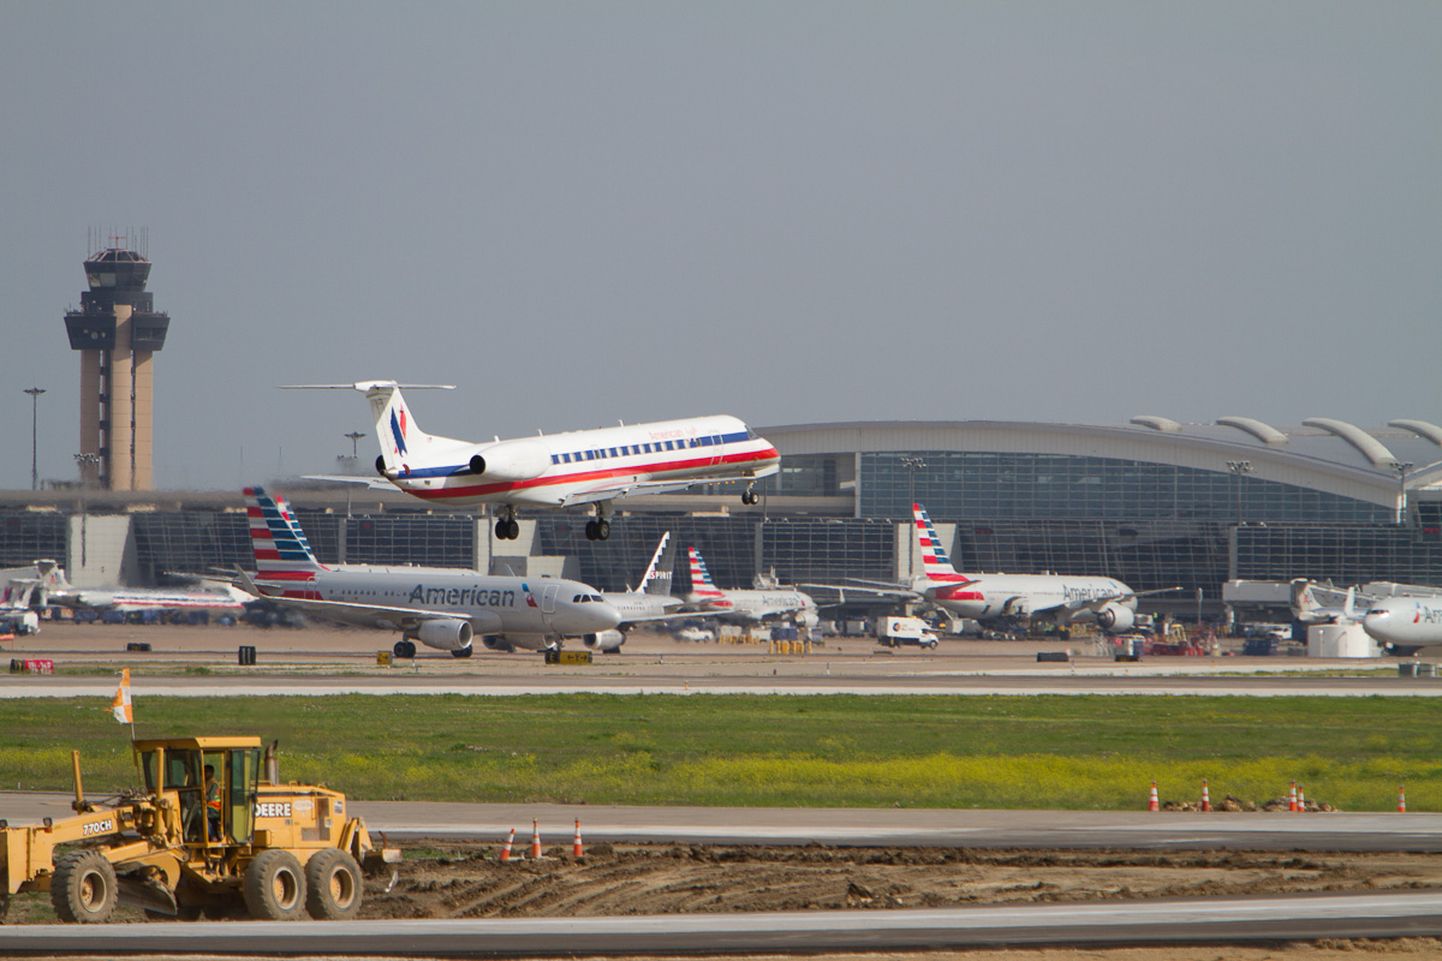 American Airlinesi suurim sõlmlennujaam on Dallas Fort Worth (pildil).